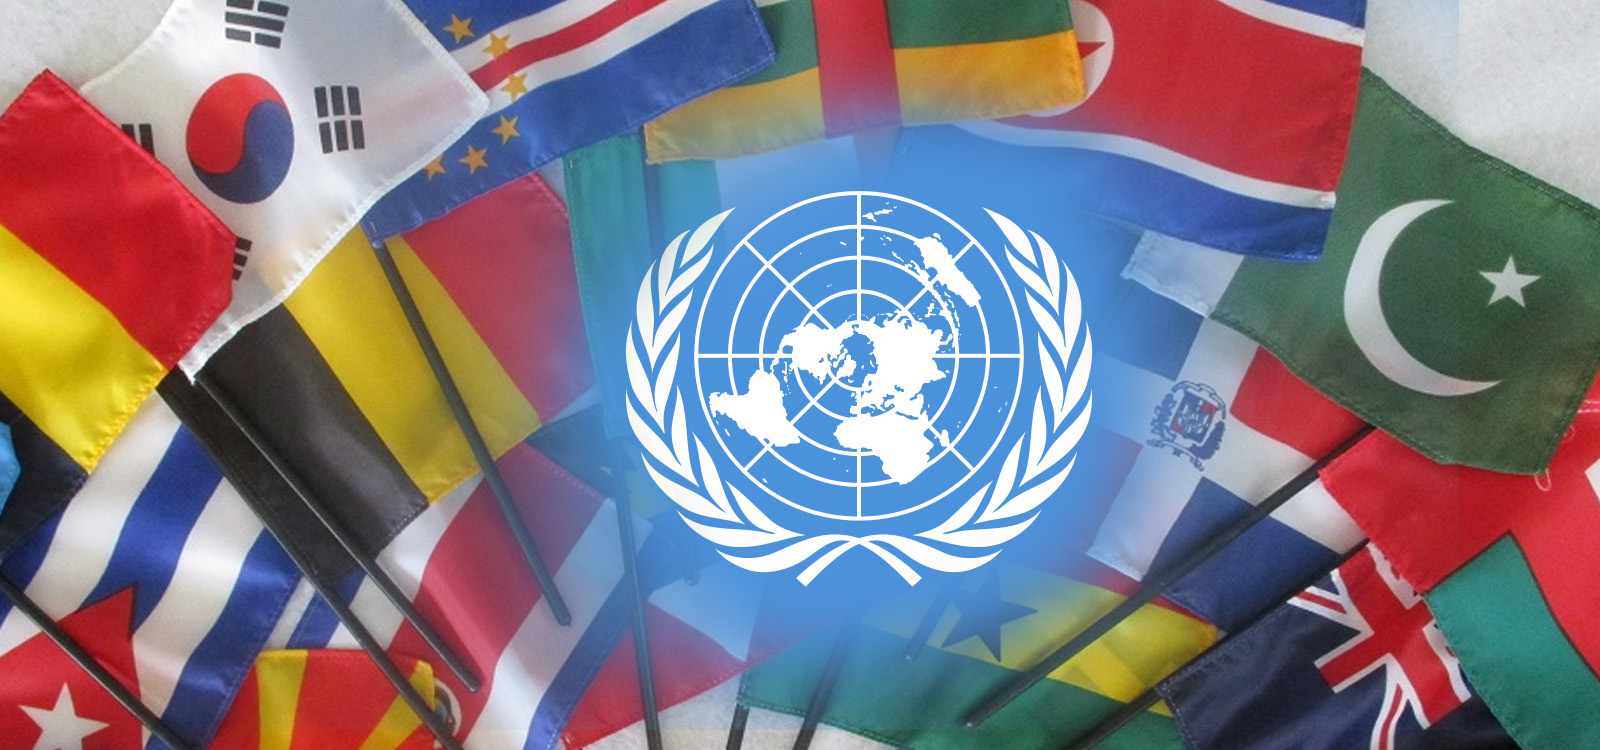 Страны организации оон. Флаги государств входящих в ООН. Международные организации ООН. 193 Государства в ООН.